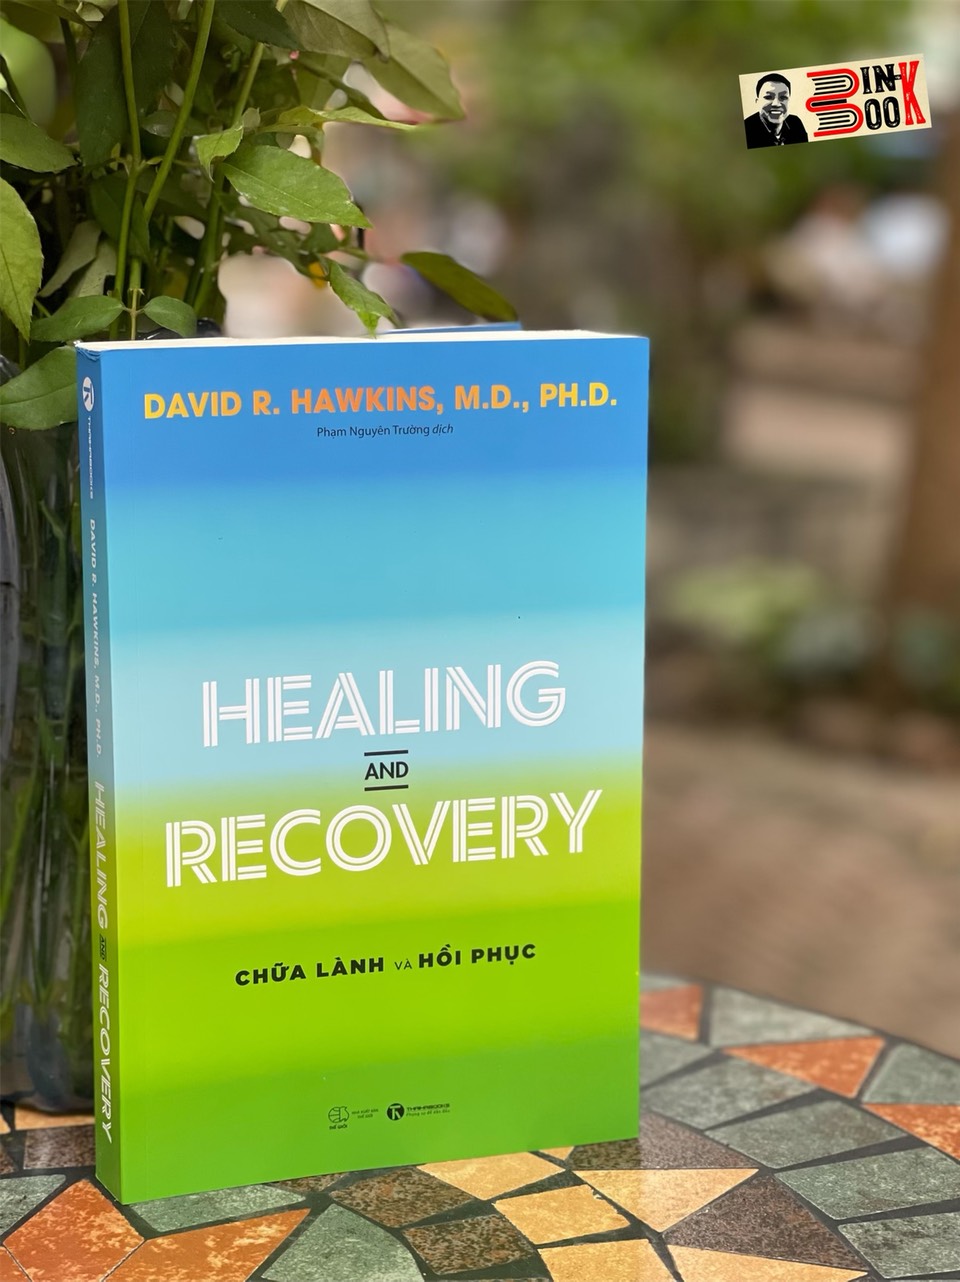 HEALING AND RECOVERY - Chữa lành và Hồi phục – David R. Hawkins, M.D., Ph.D – Phạm Nguyên Trường dịch - Thái Hà  - NXB Thế Giới